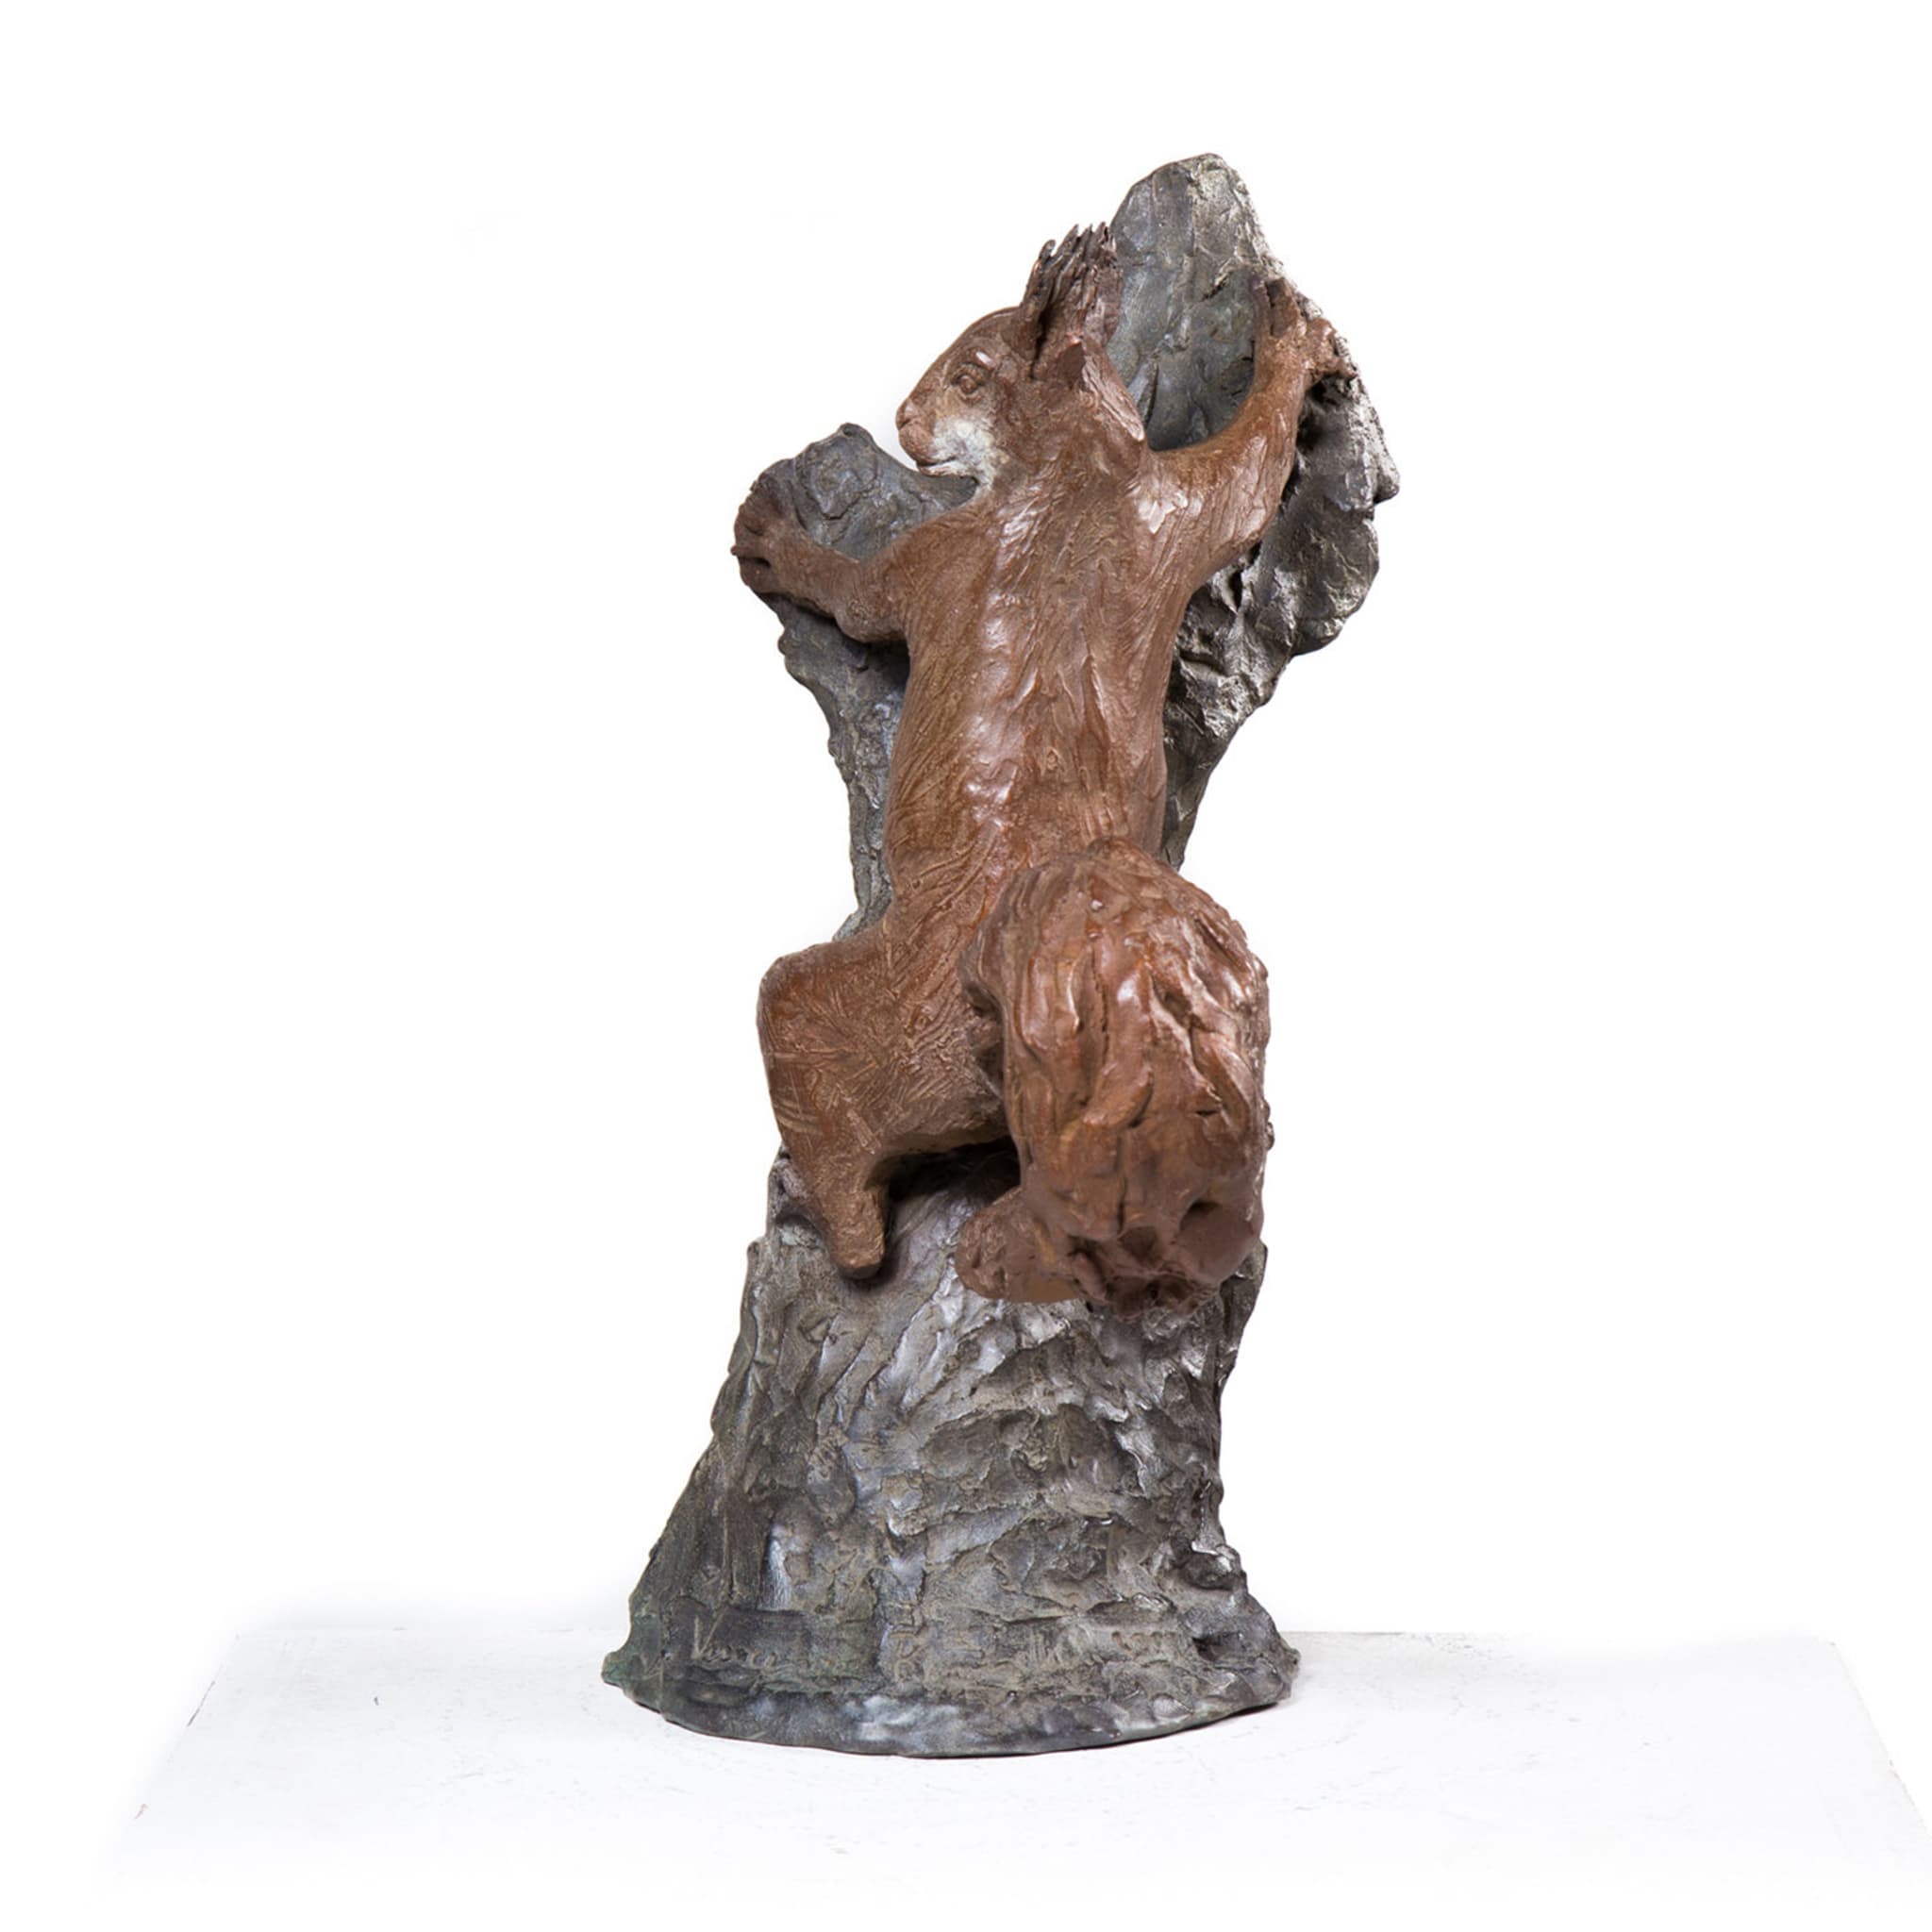 Brown Squirrel Sculpture - Alternative view 2